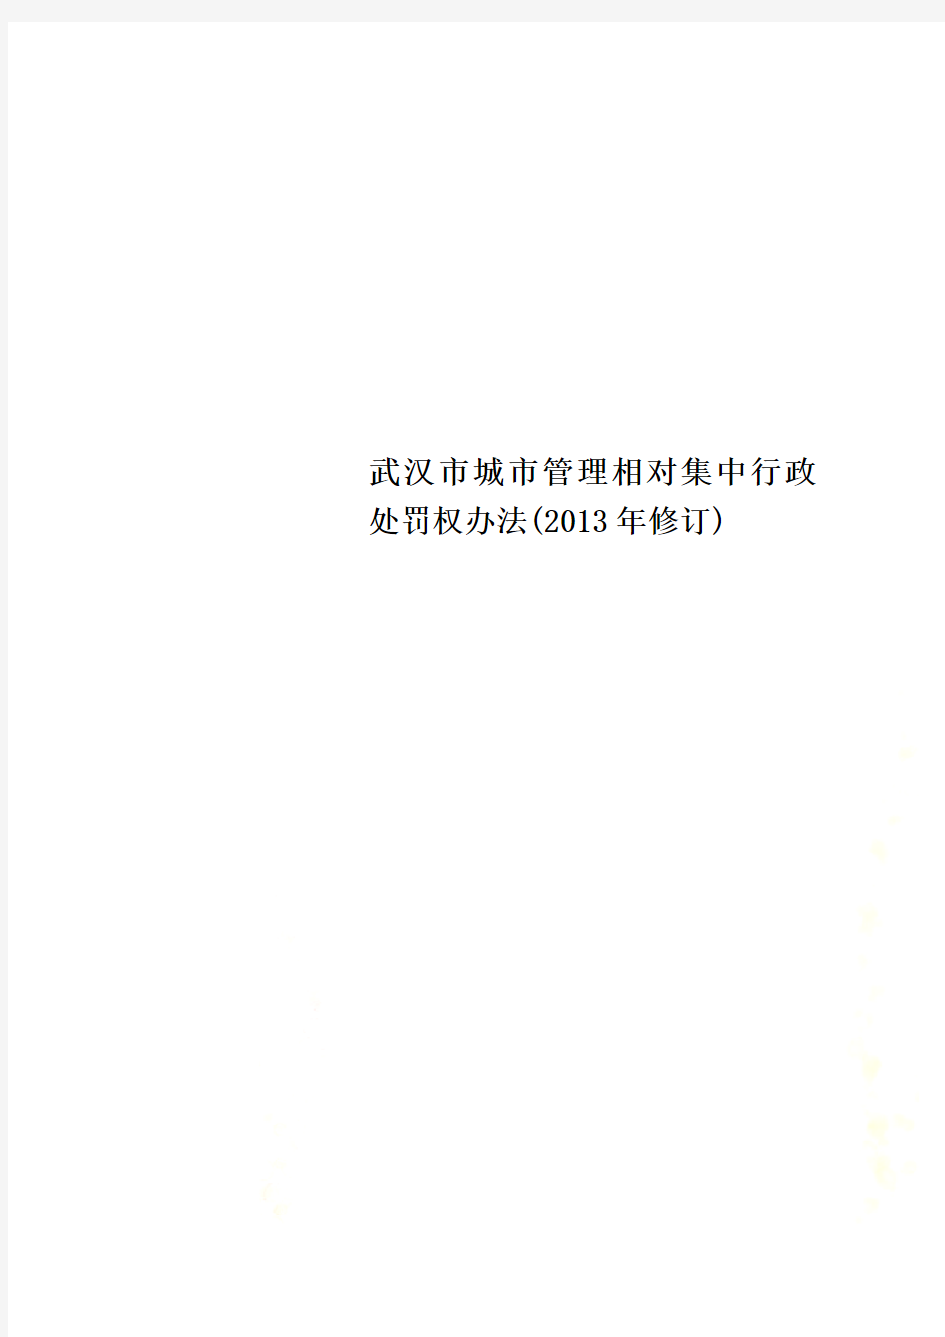 武汉市城市管理相对集中行政处罚权办法(2013年修订)